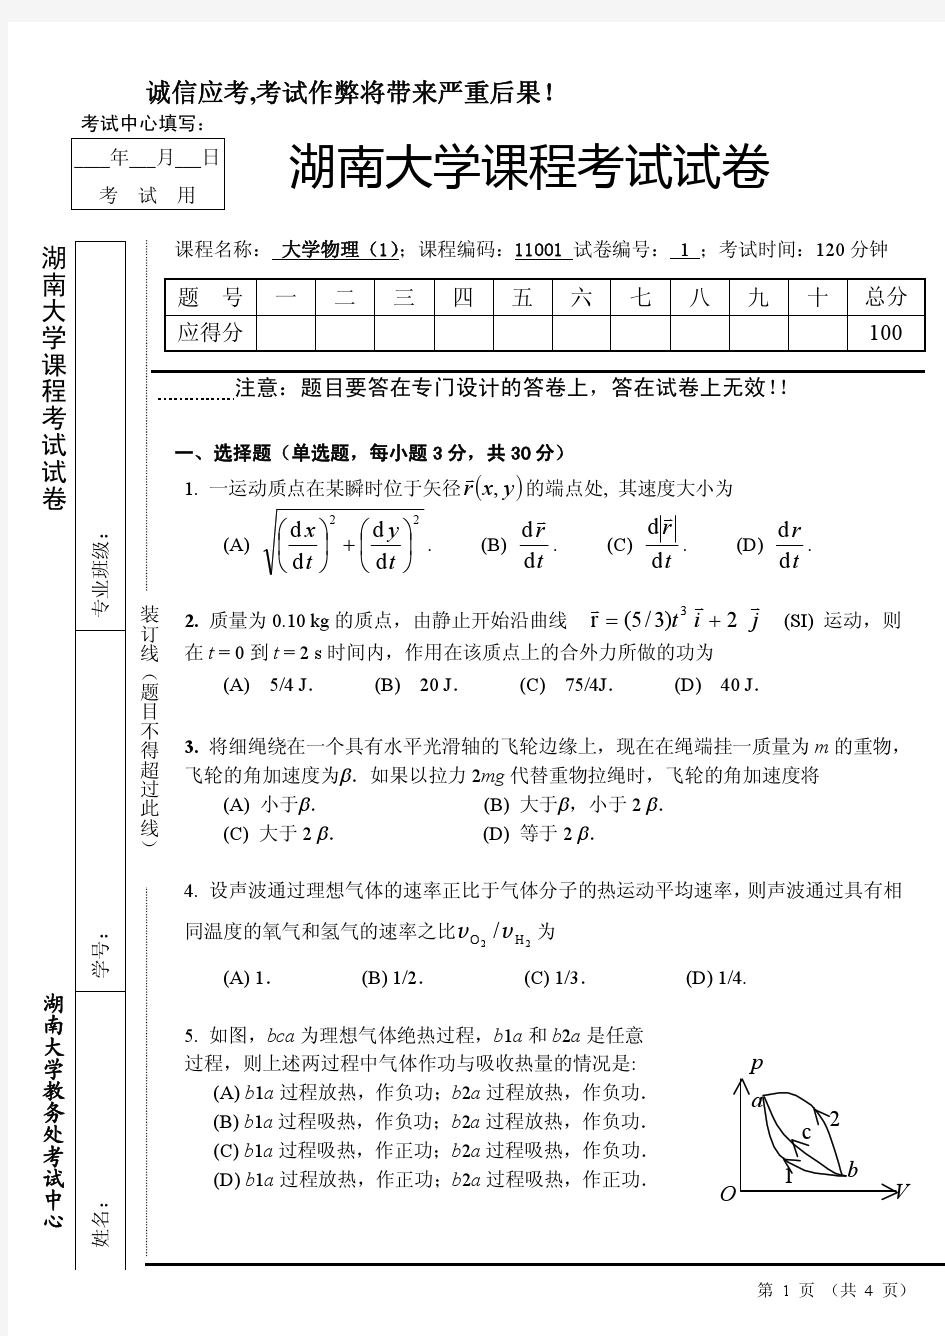 湖南大学 大学物理A(1)期末试卷2份(含答案)